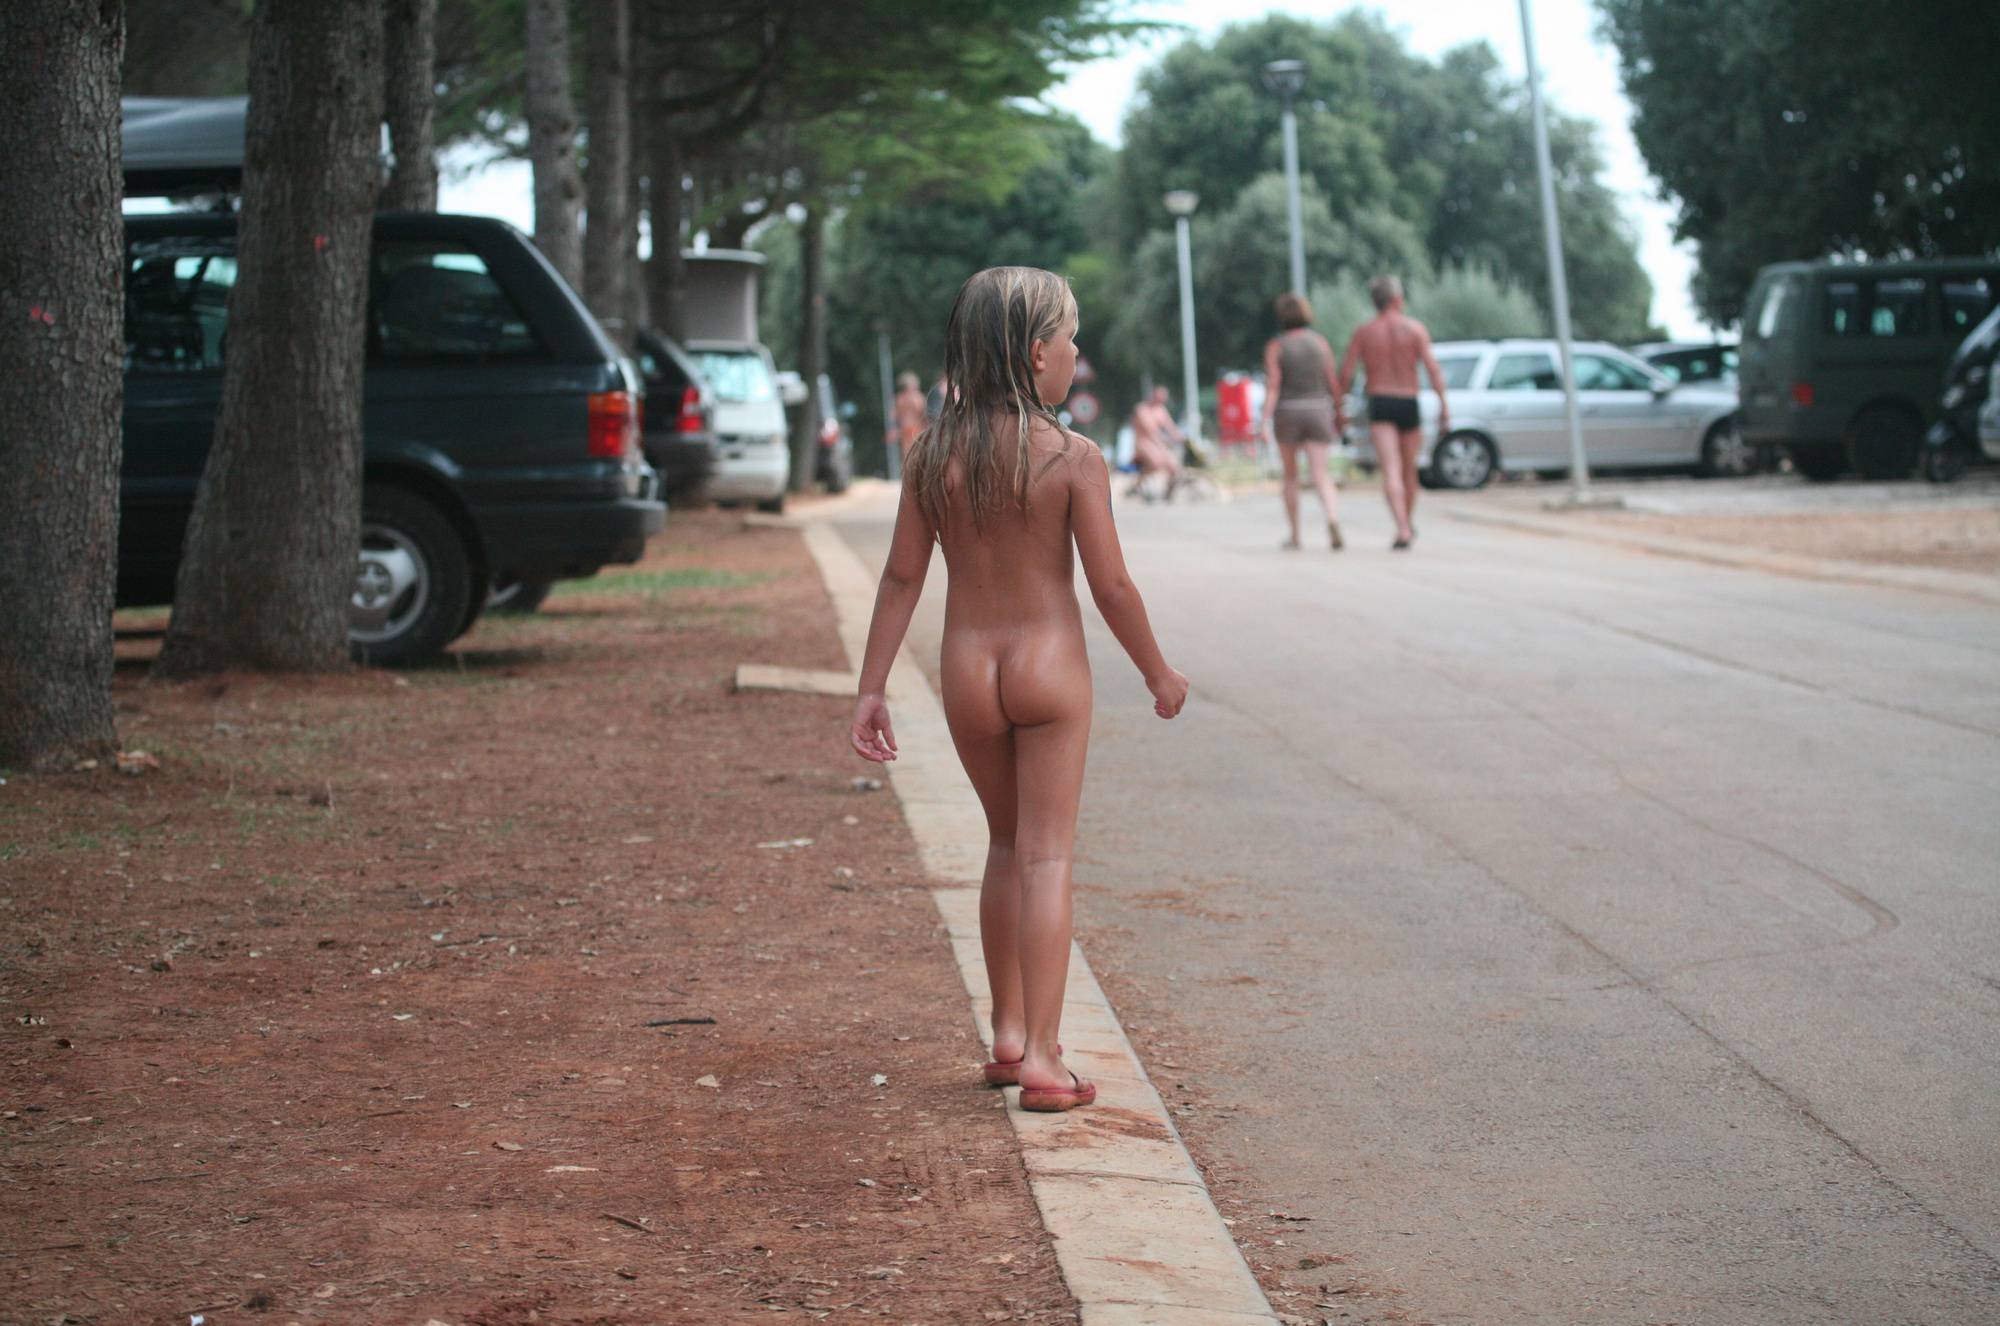 Naturist Child on Sidewalk - 2